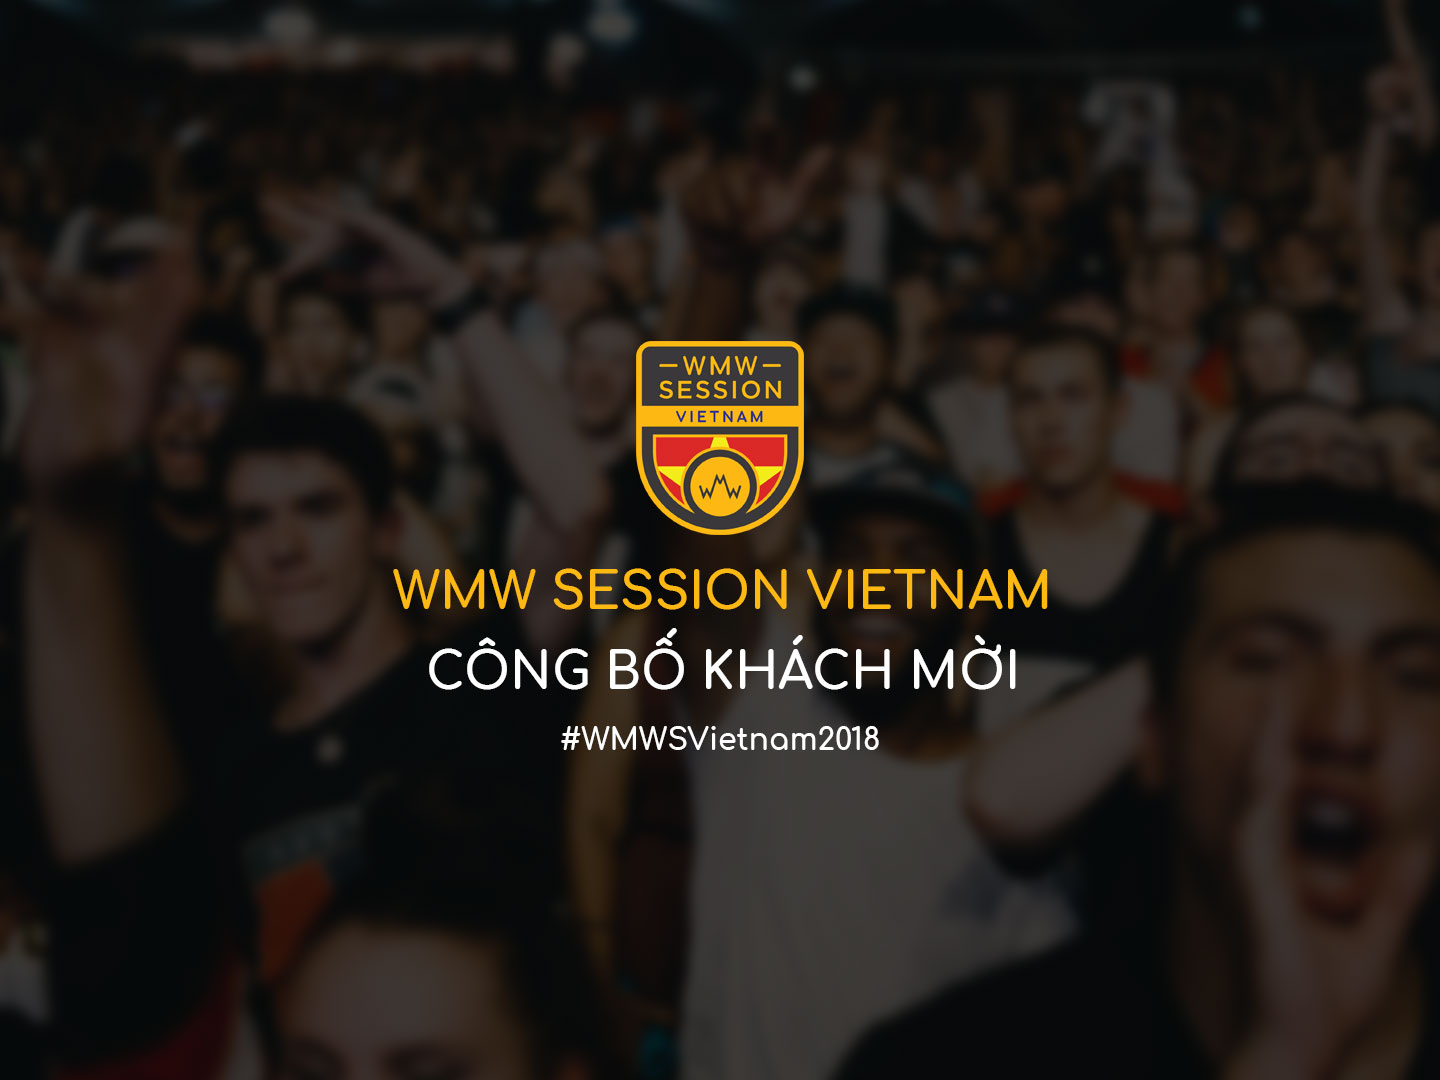 Hội Nghị Âm Nhạc WMW Session Vietnam Công Bố 3 Khách Mời Đầu Tiên